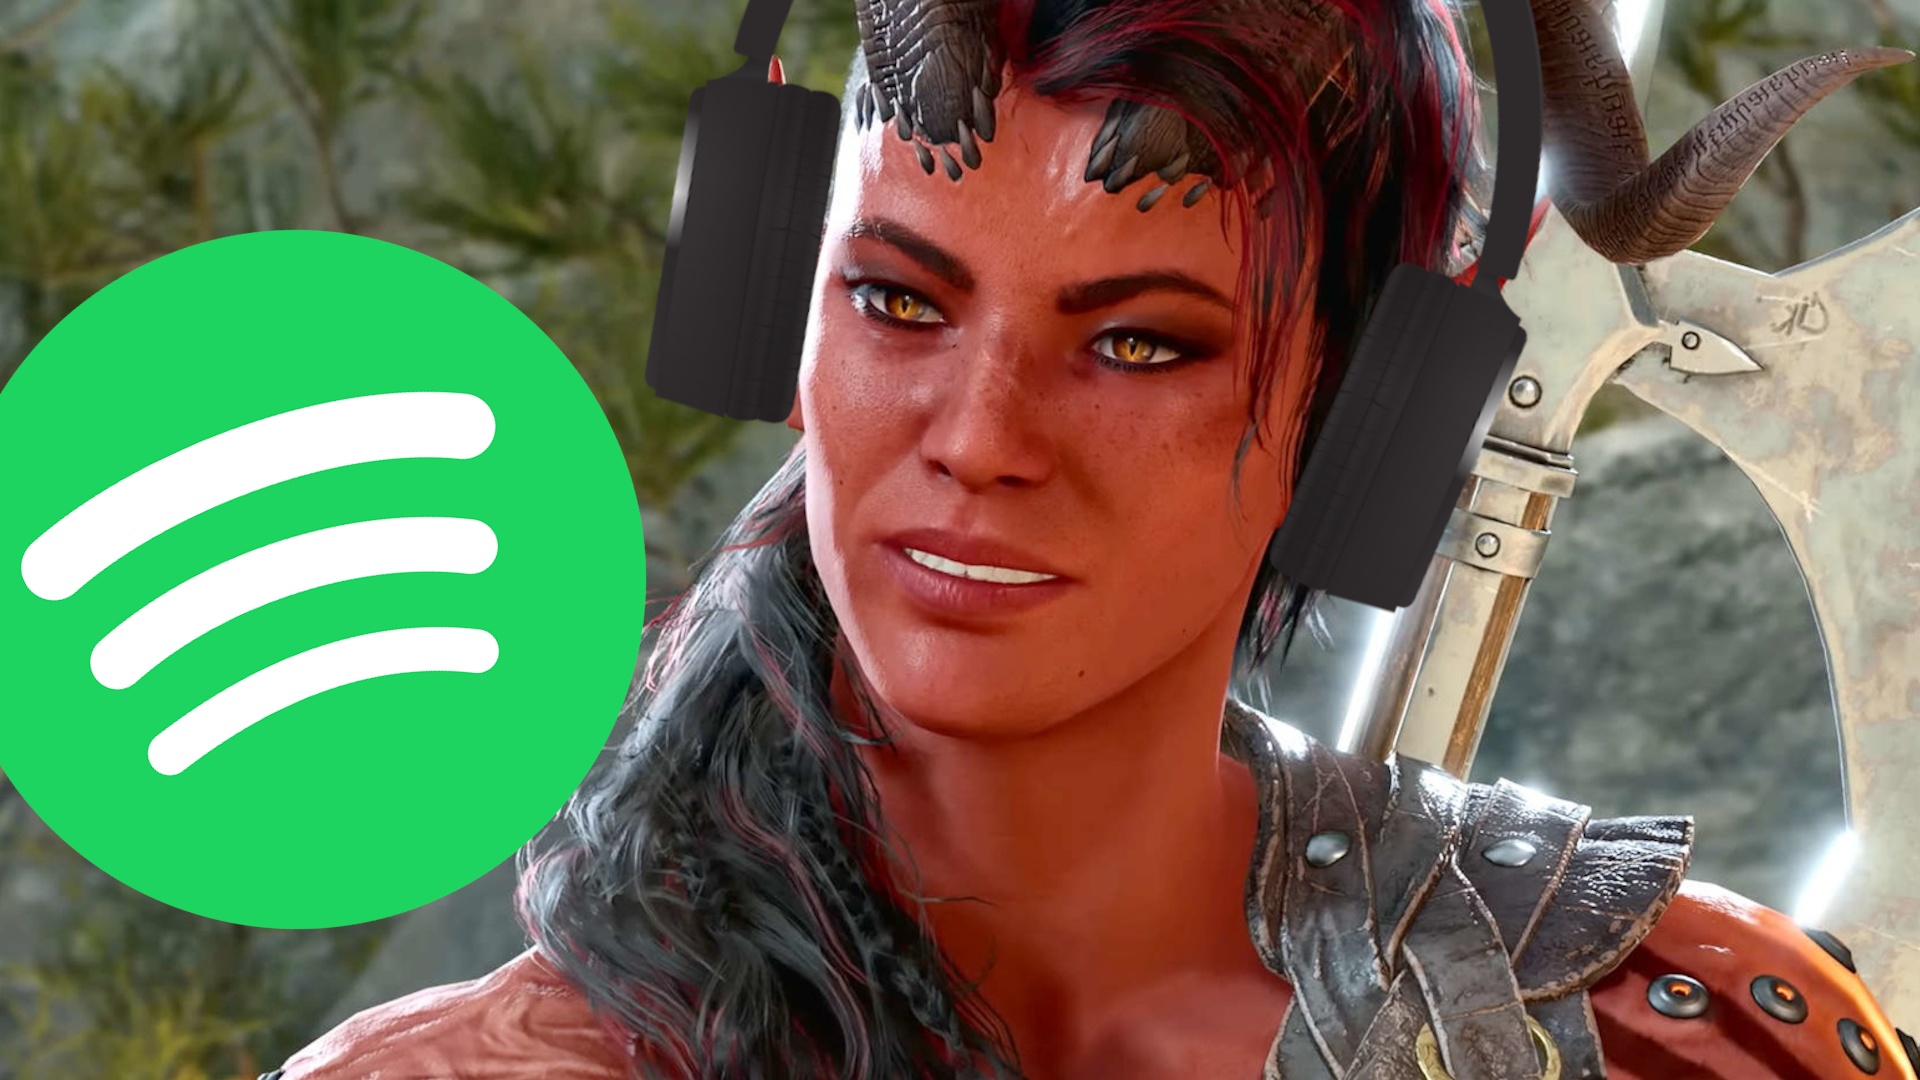 #Nicht nur als Spiel beliebt: Baldur’s Gate 3 wird auf Spotify wohl millionenfach gehört